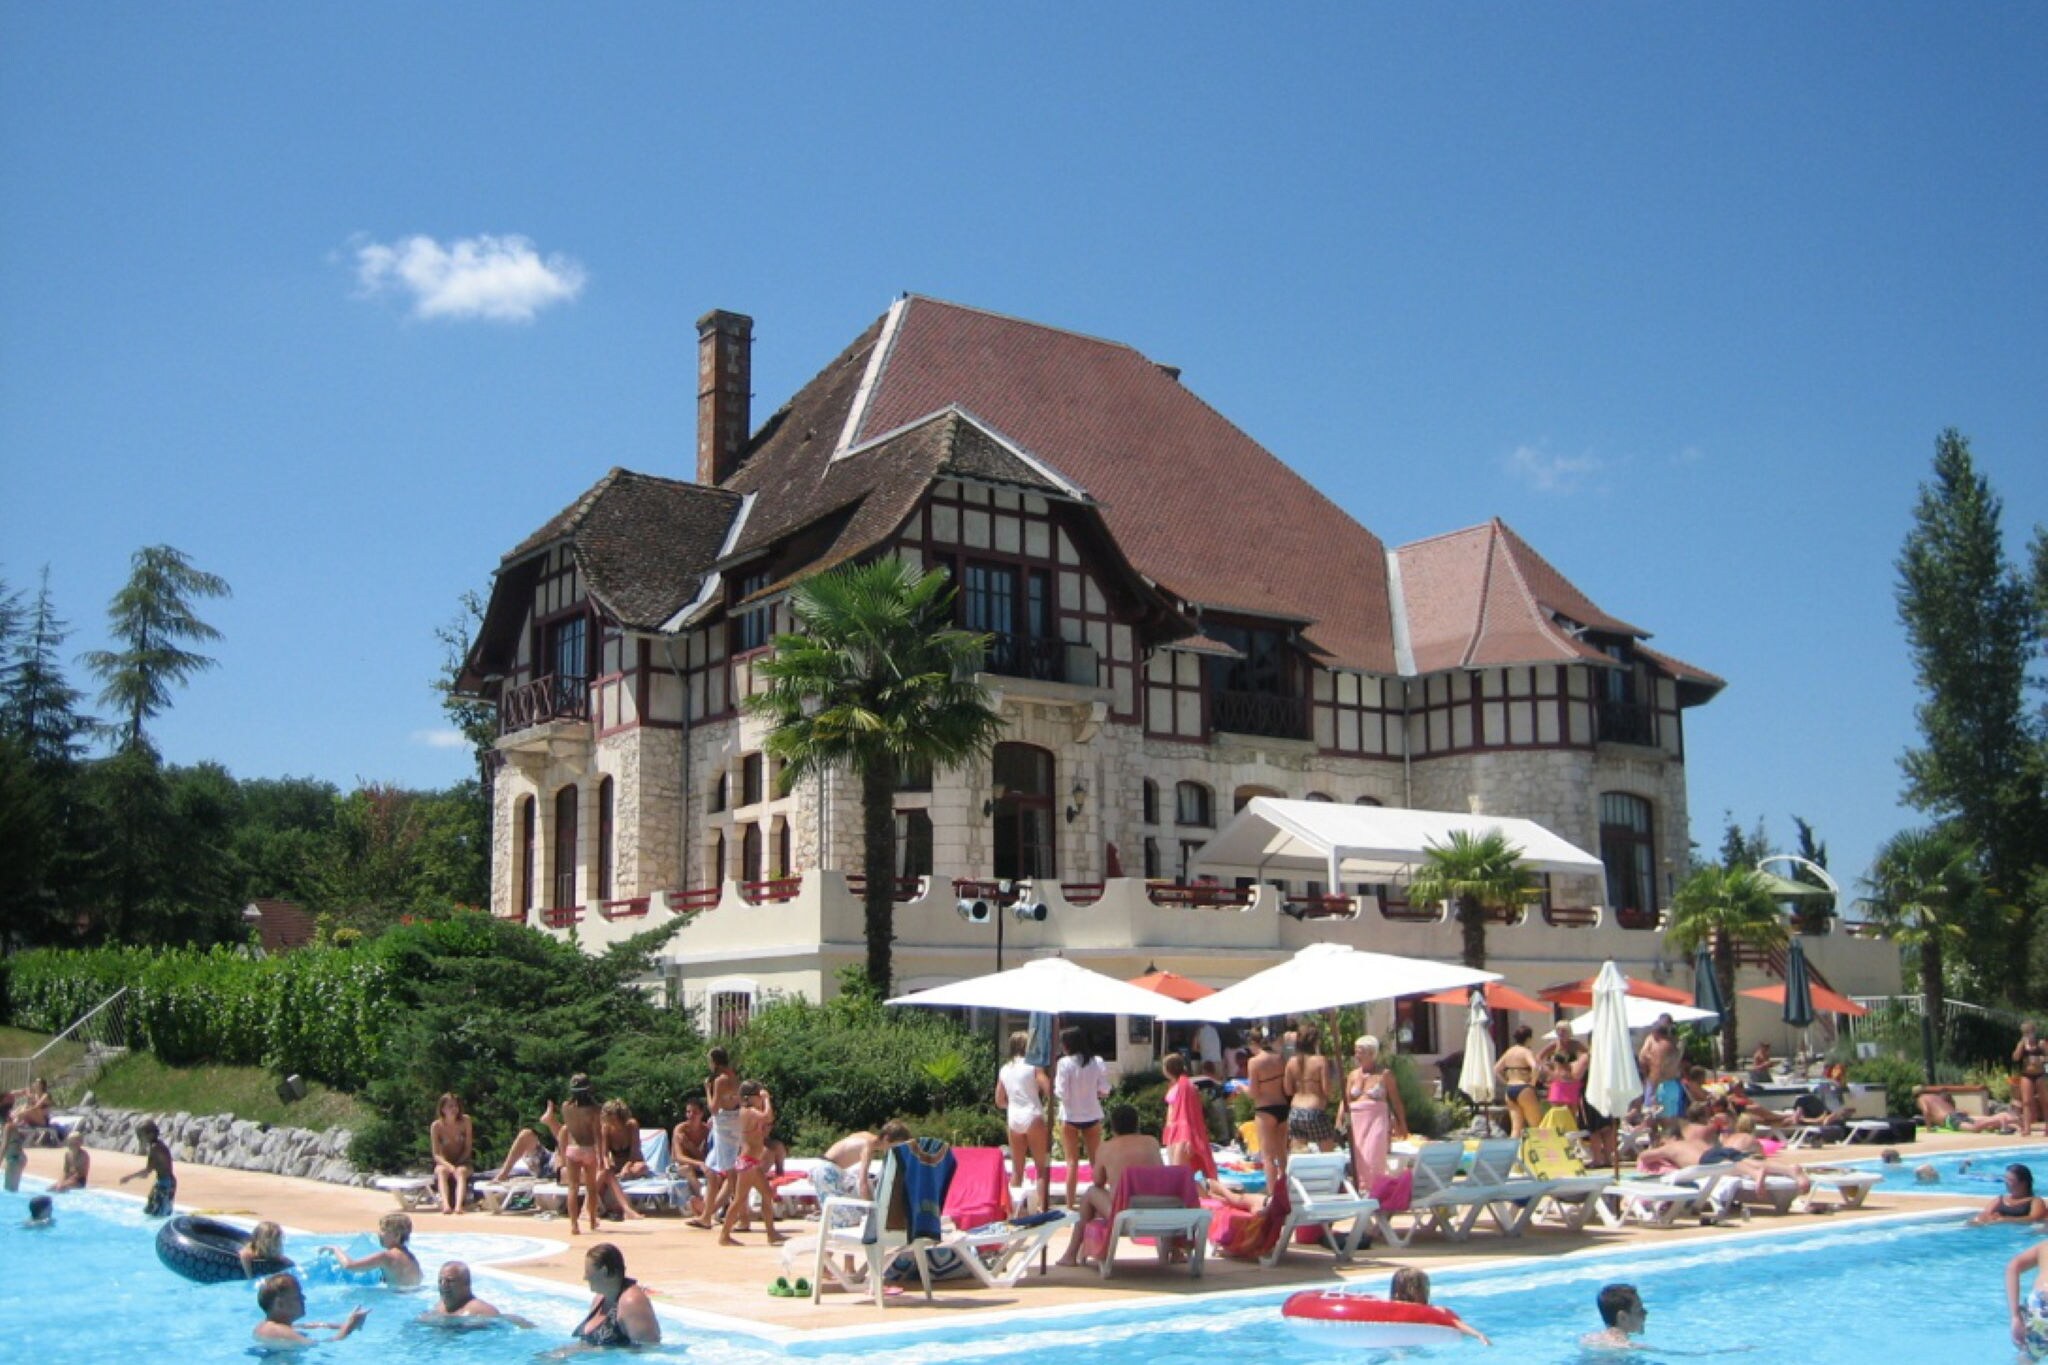 Landelijk gelegen vrijstaande villa in Zuid-Frankrijk met zwembaden, tennisbaan en restaurant.